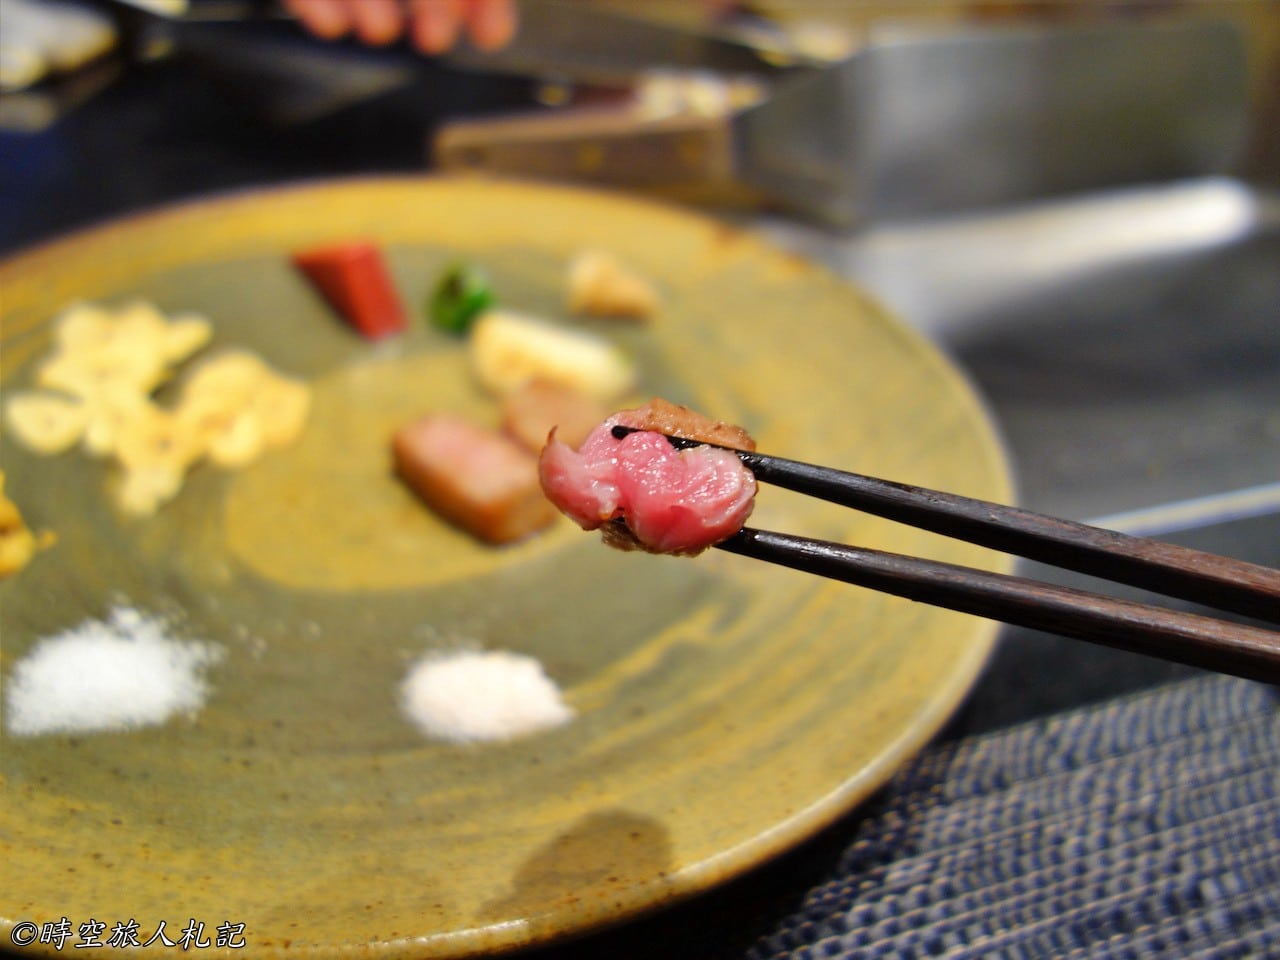 神戶美食,kobe-food,日本神戶美食 25